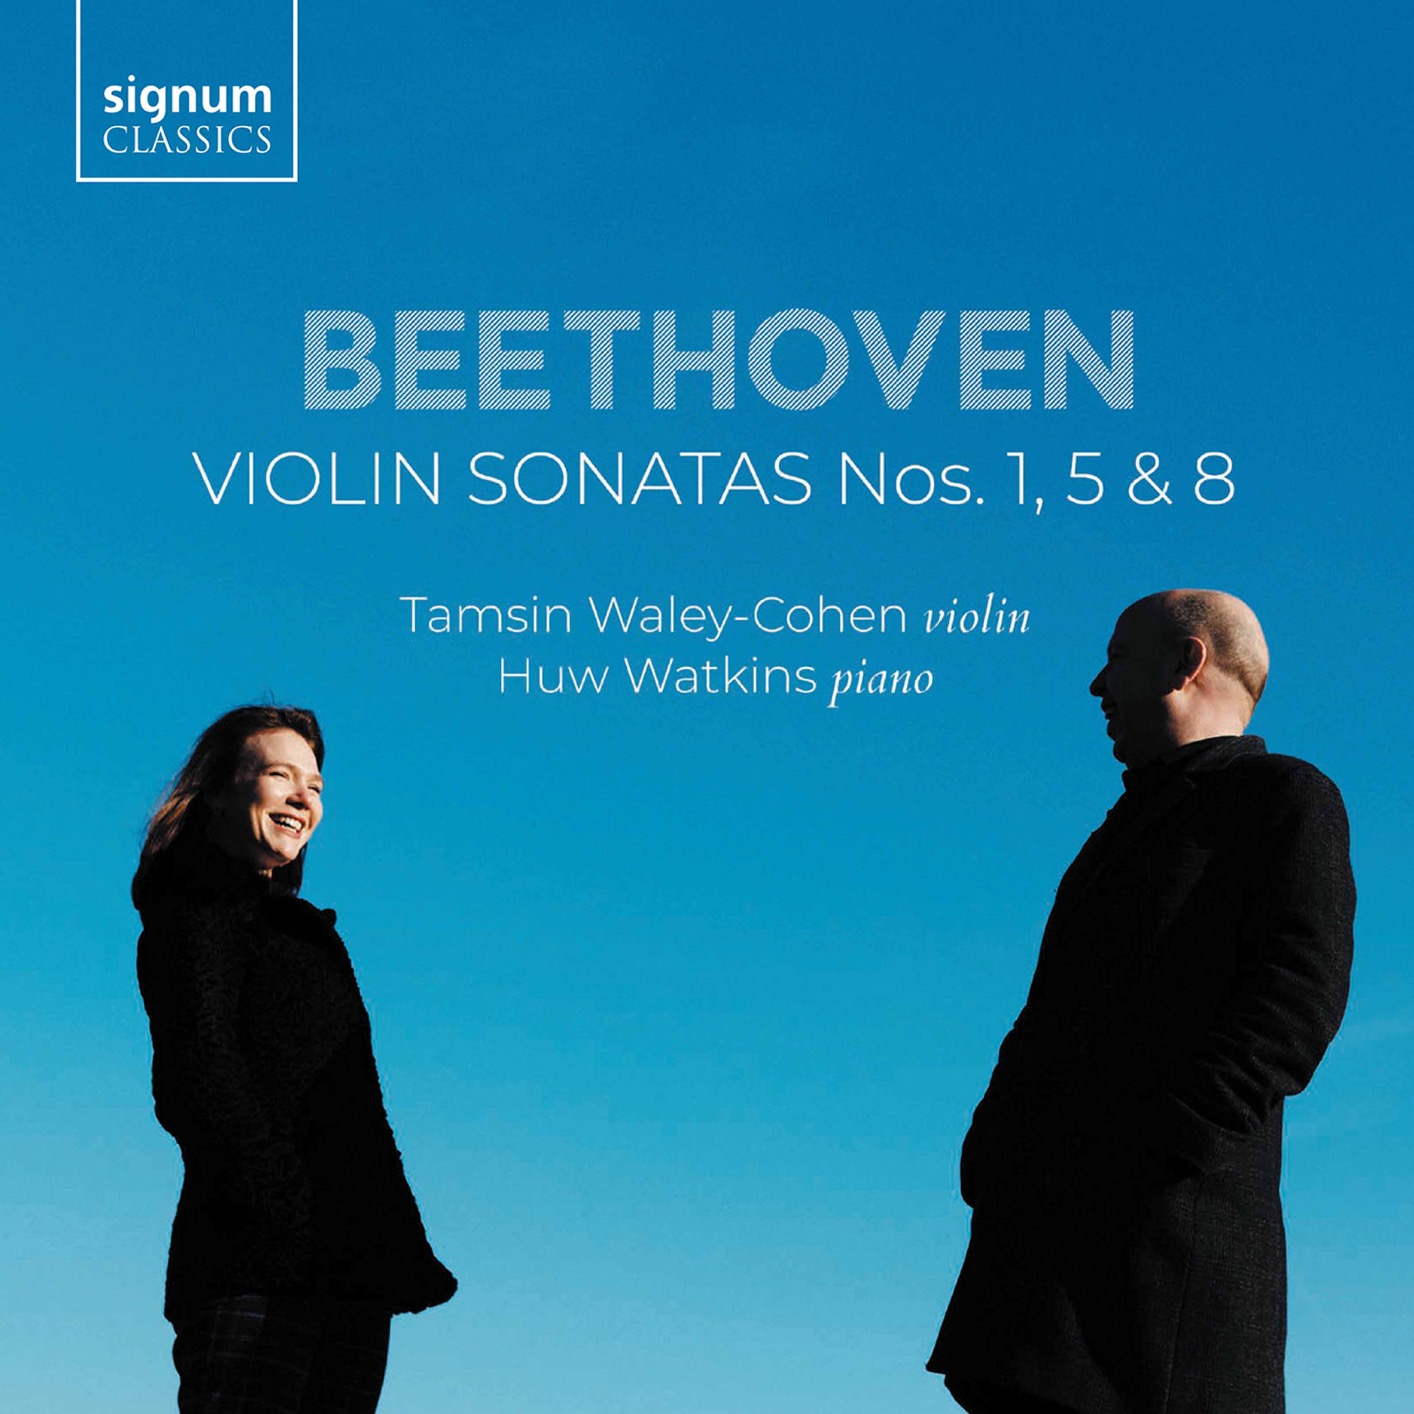 Tamsin Waley-Cohen & Huw Watkins - Beethoven - Violin Sonatas Nos. 1, 5 & 8 (2020) [FLAC 24bit/96kHz]